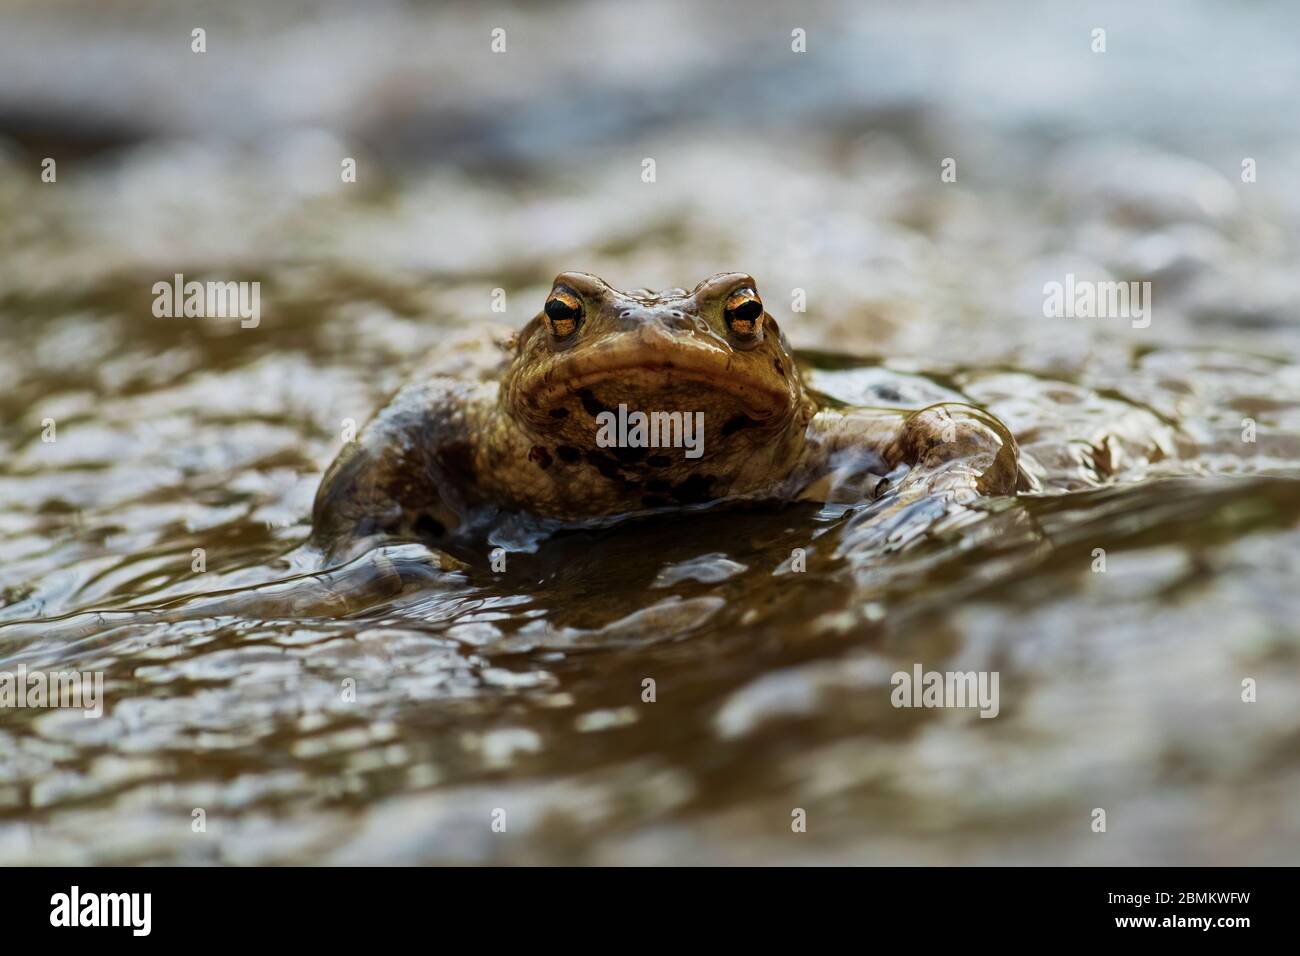 Comune europeo Toad - Bufo bufo, grande rana dai fiumi e laghi europei, Zlin, Repubblica Ceca. Foto Stock